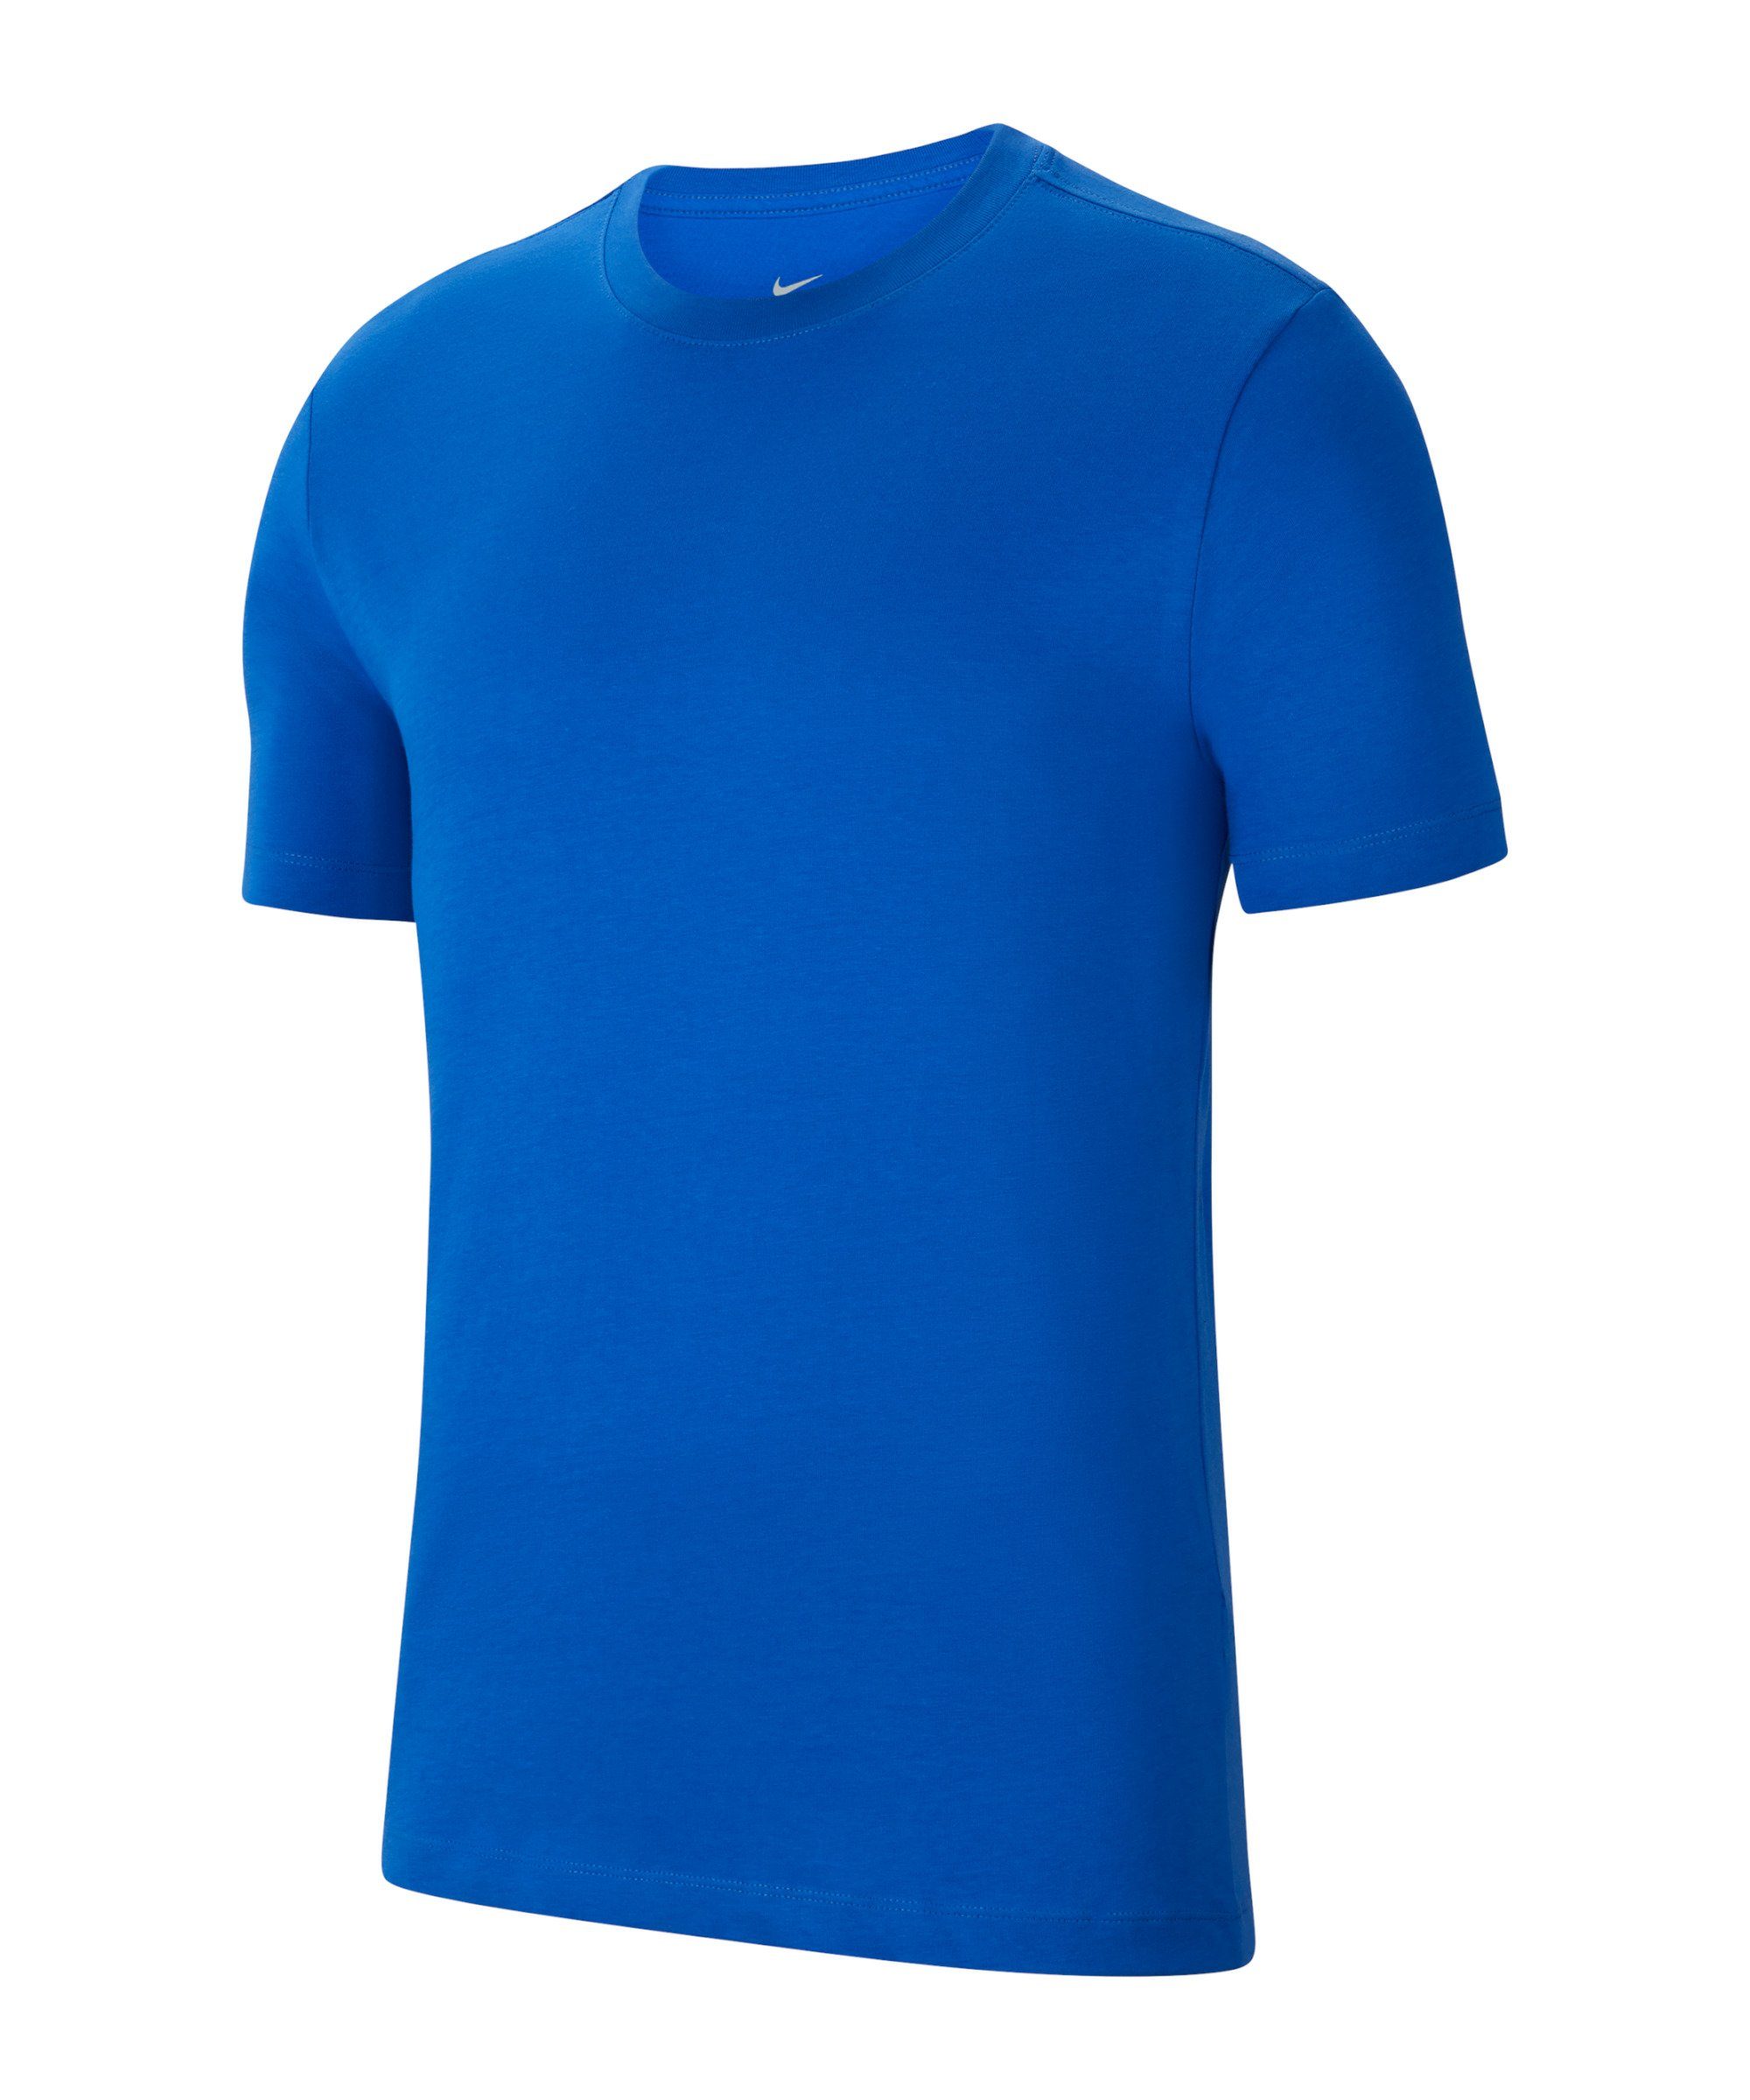 20 Nike T-Shirt default T-Shirt blau Park